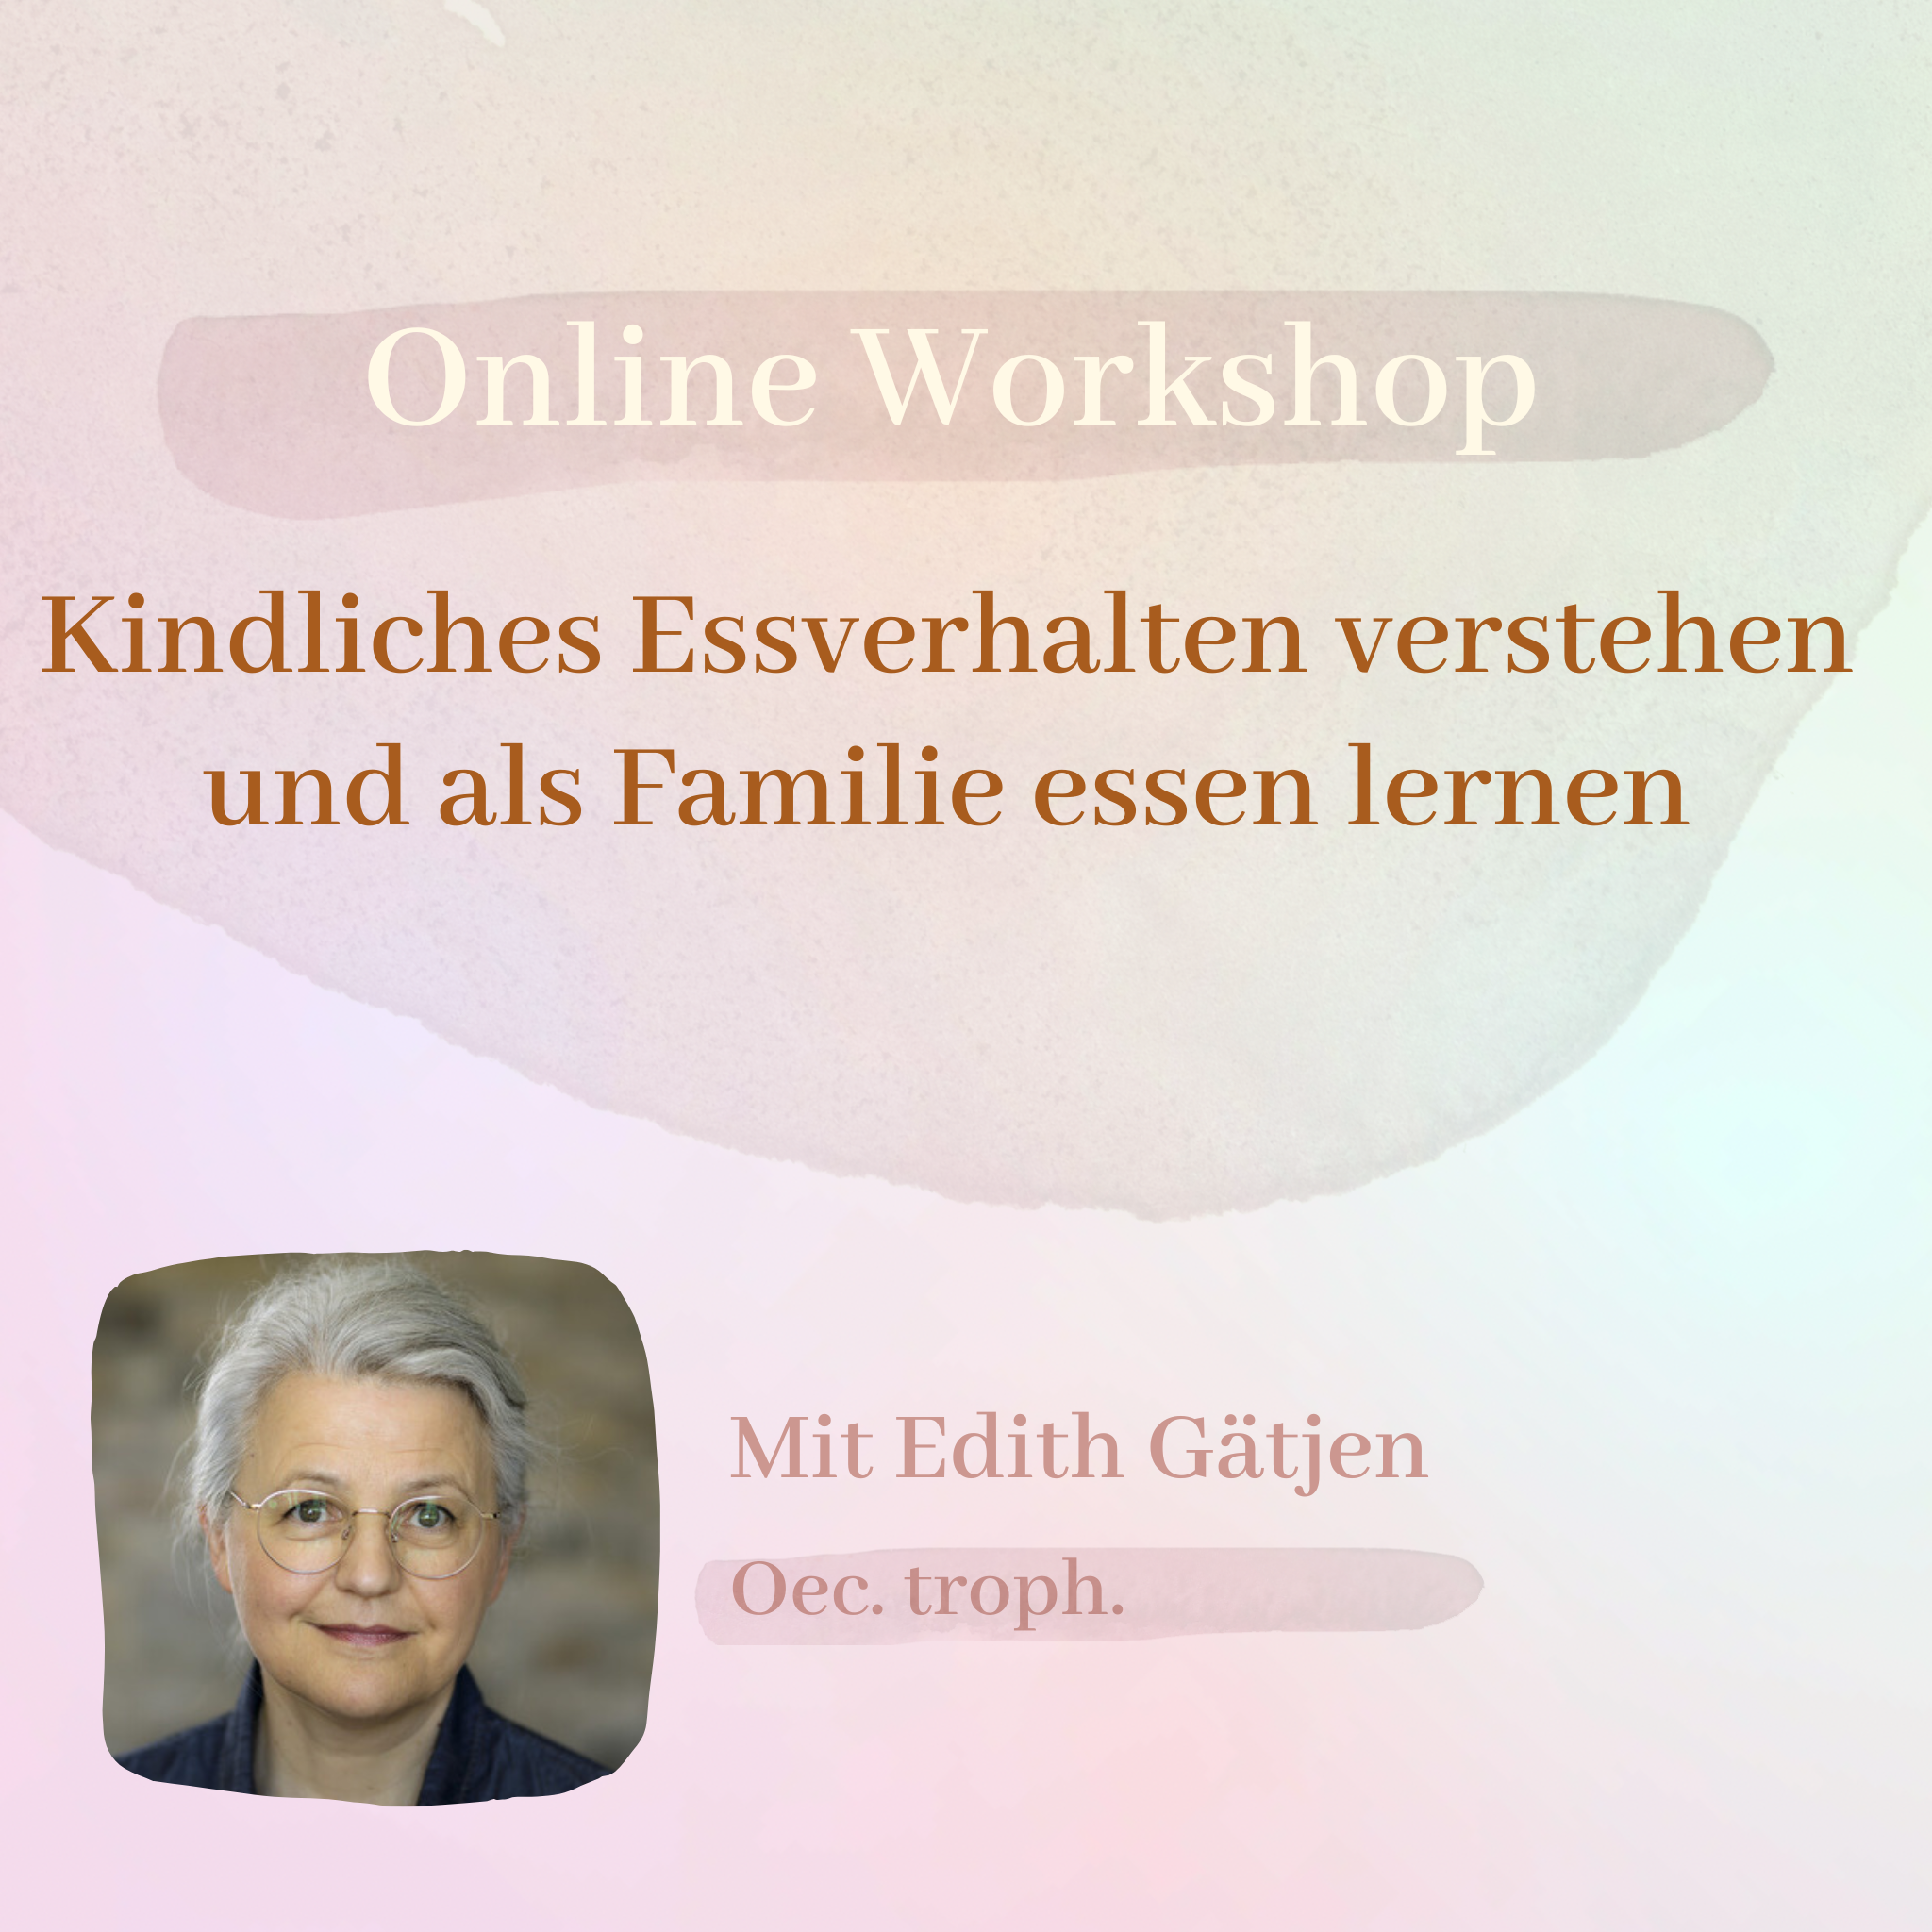 Kindliches Essverhalten verstehen und als Familie essen lernen │ Online Workshop mit Oec. troph. Edith Gätjen